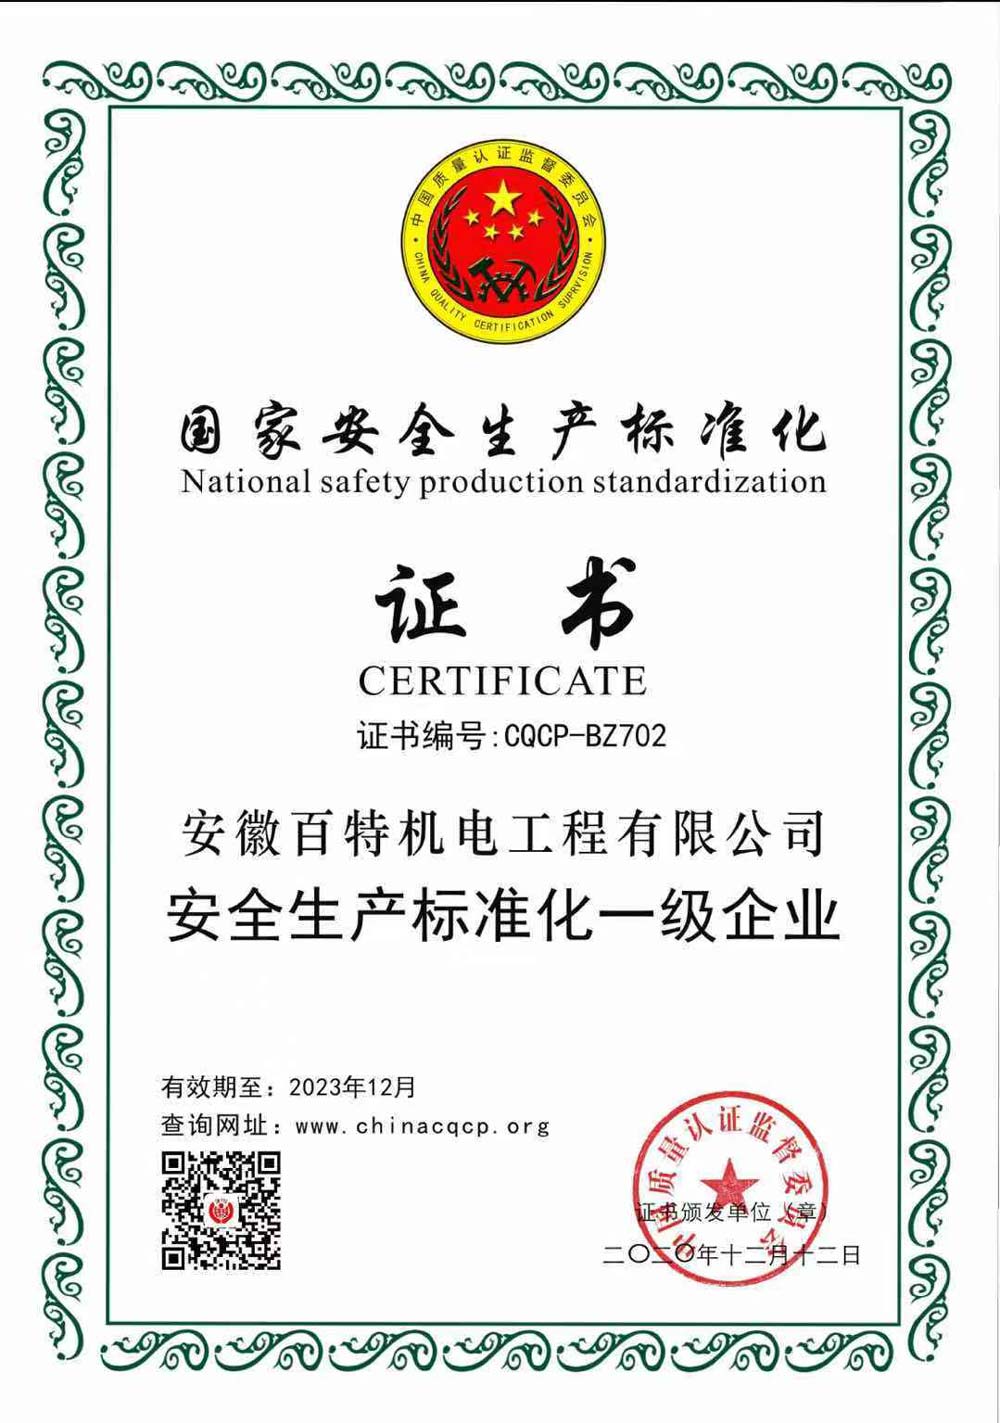 上海安全生产标准化